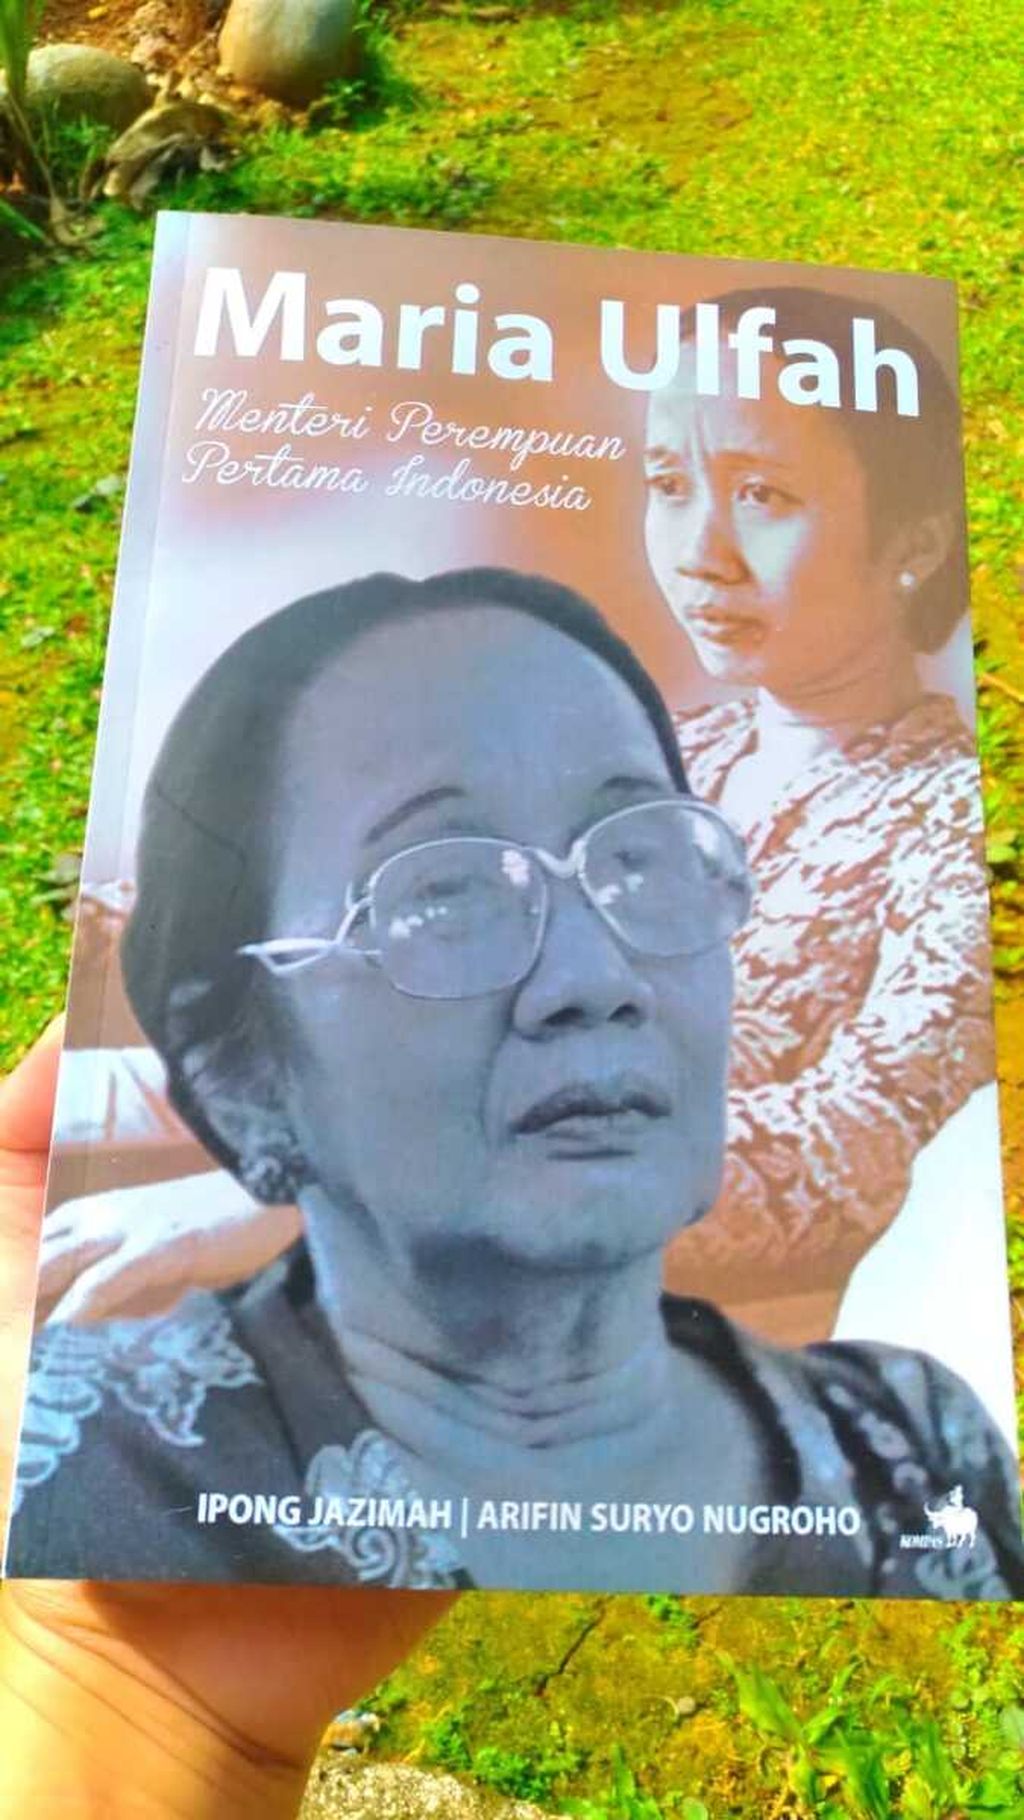 Halaman muka buku berjudul <i>Maria Ulfah: Menteri Perempuan Pertama Indonesia</i>.